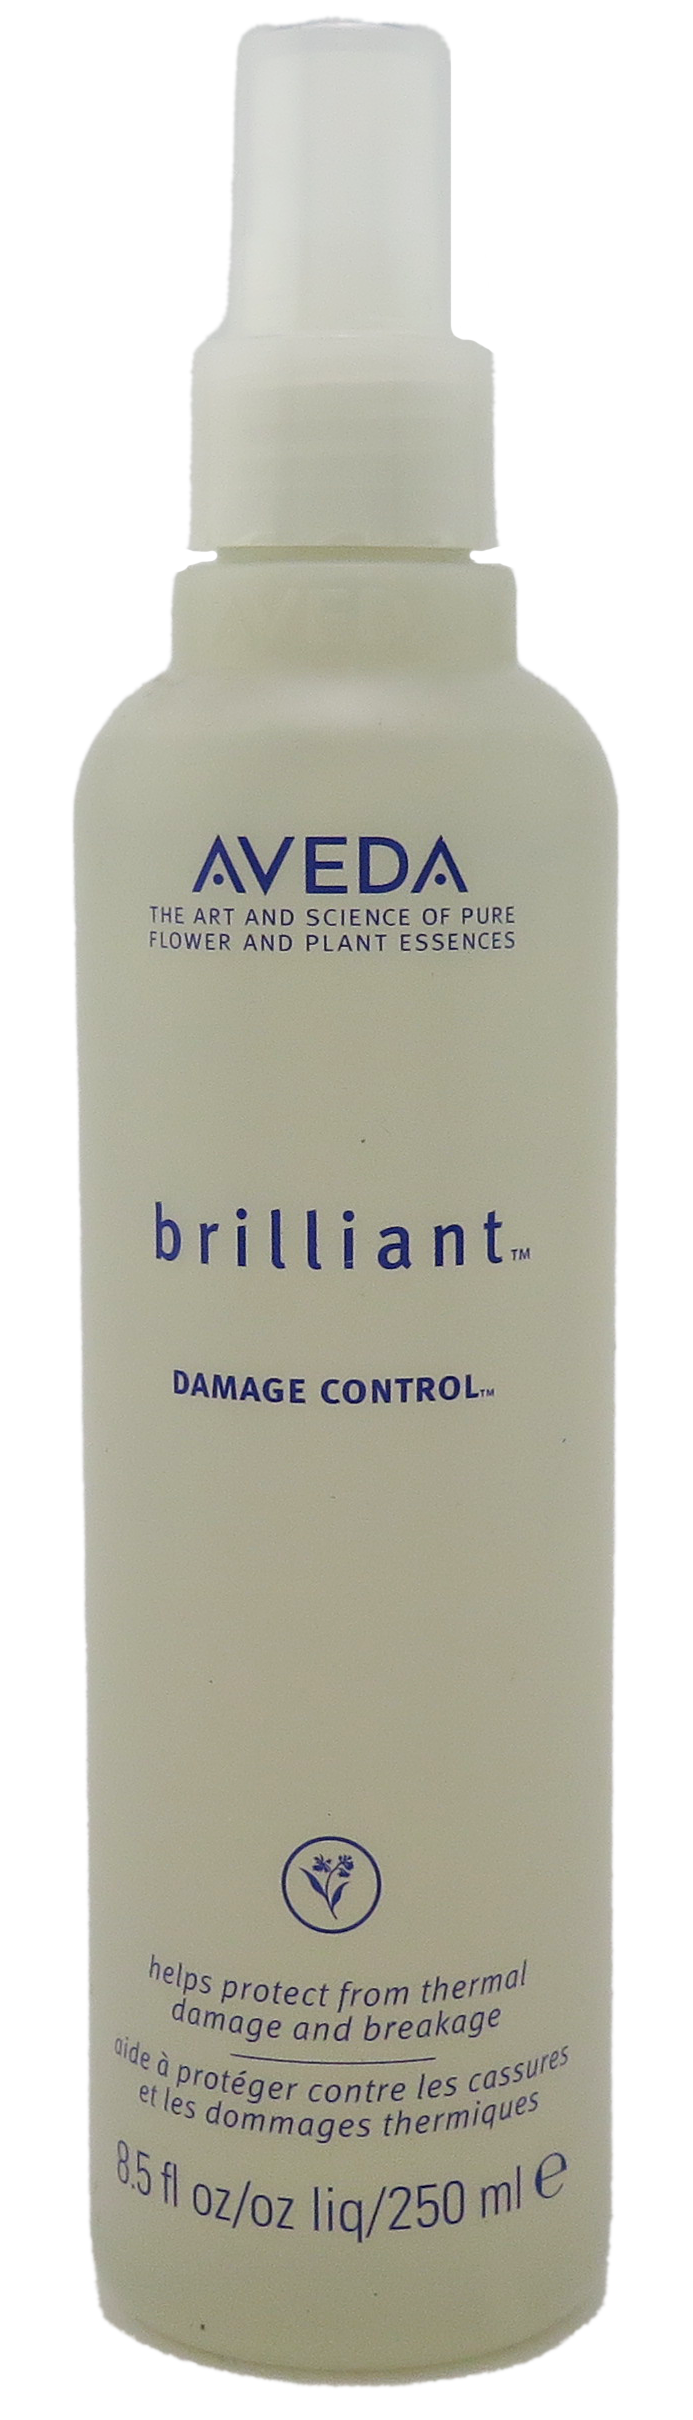 Aveda Brilliant Damage Control Spray 8.5 fl oz